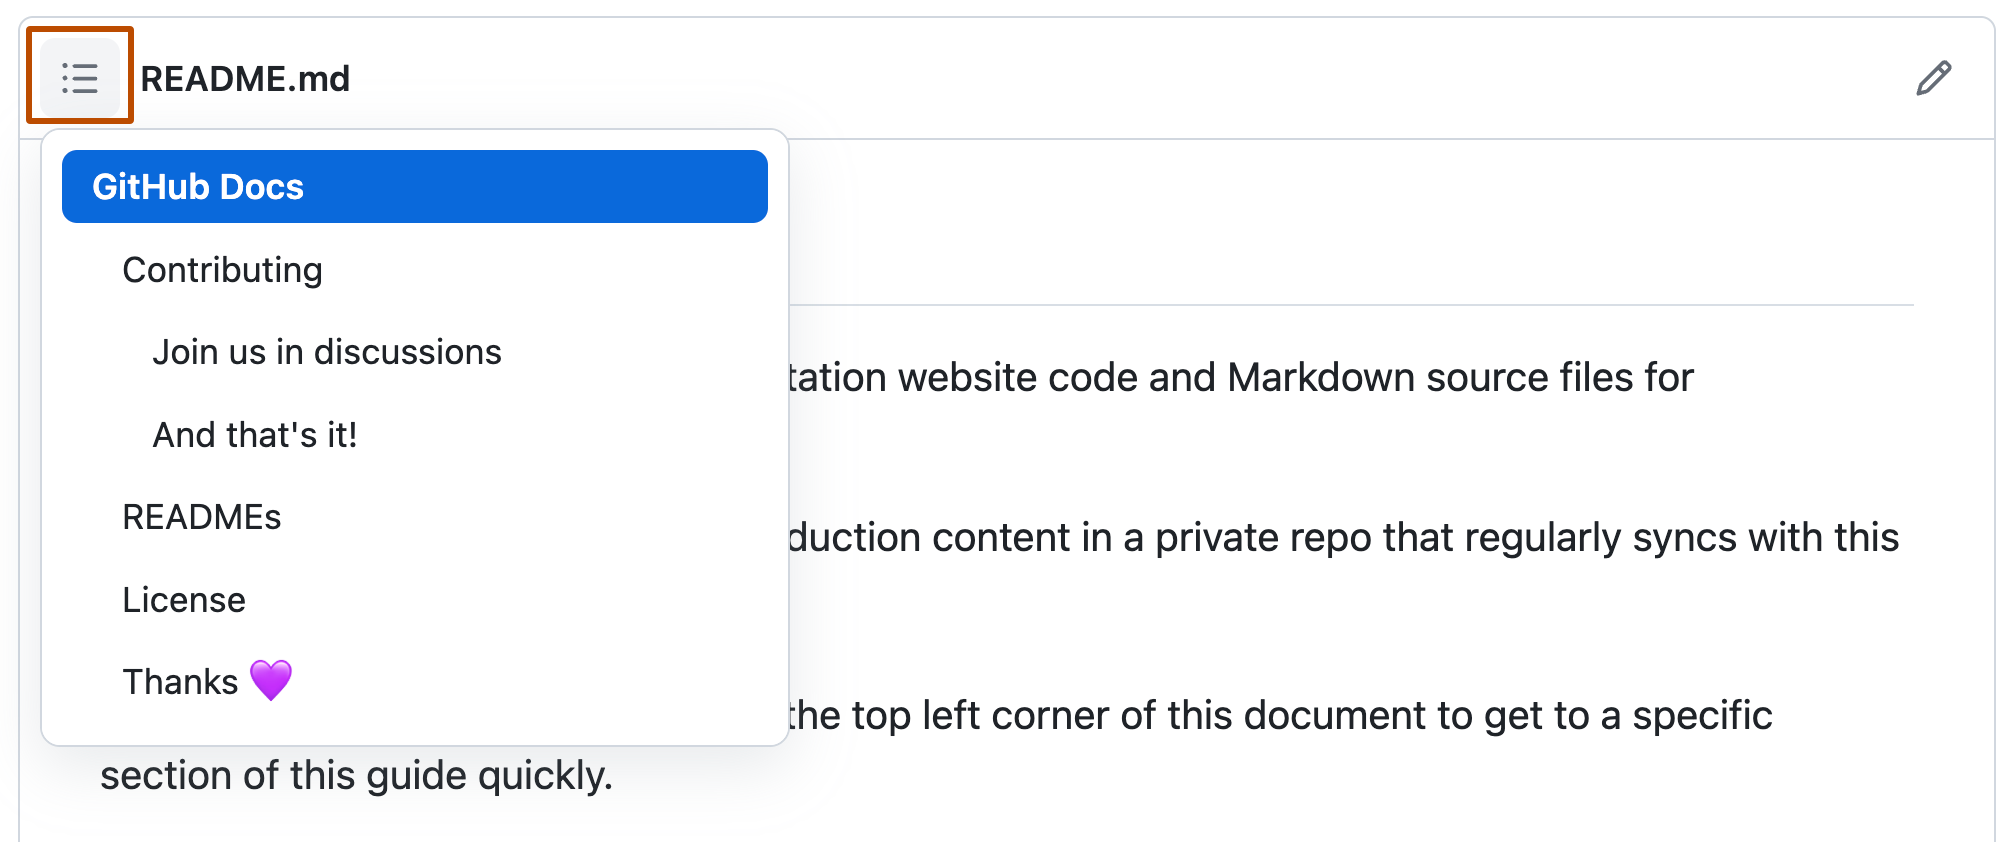 Снимок экрана: файл сведений в репозитории открытый код документации GitHub с раскрывающимся меню для оглавлением. Значок оглавлиния выделен темно-оранжевым цветом.